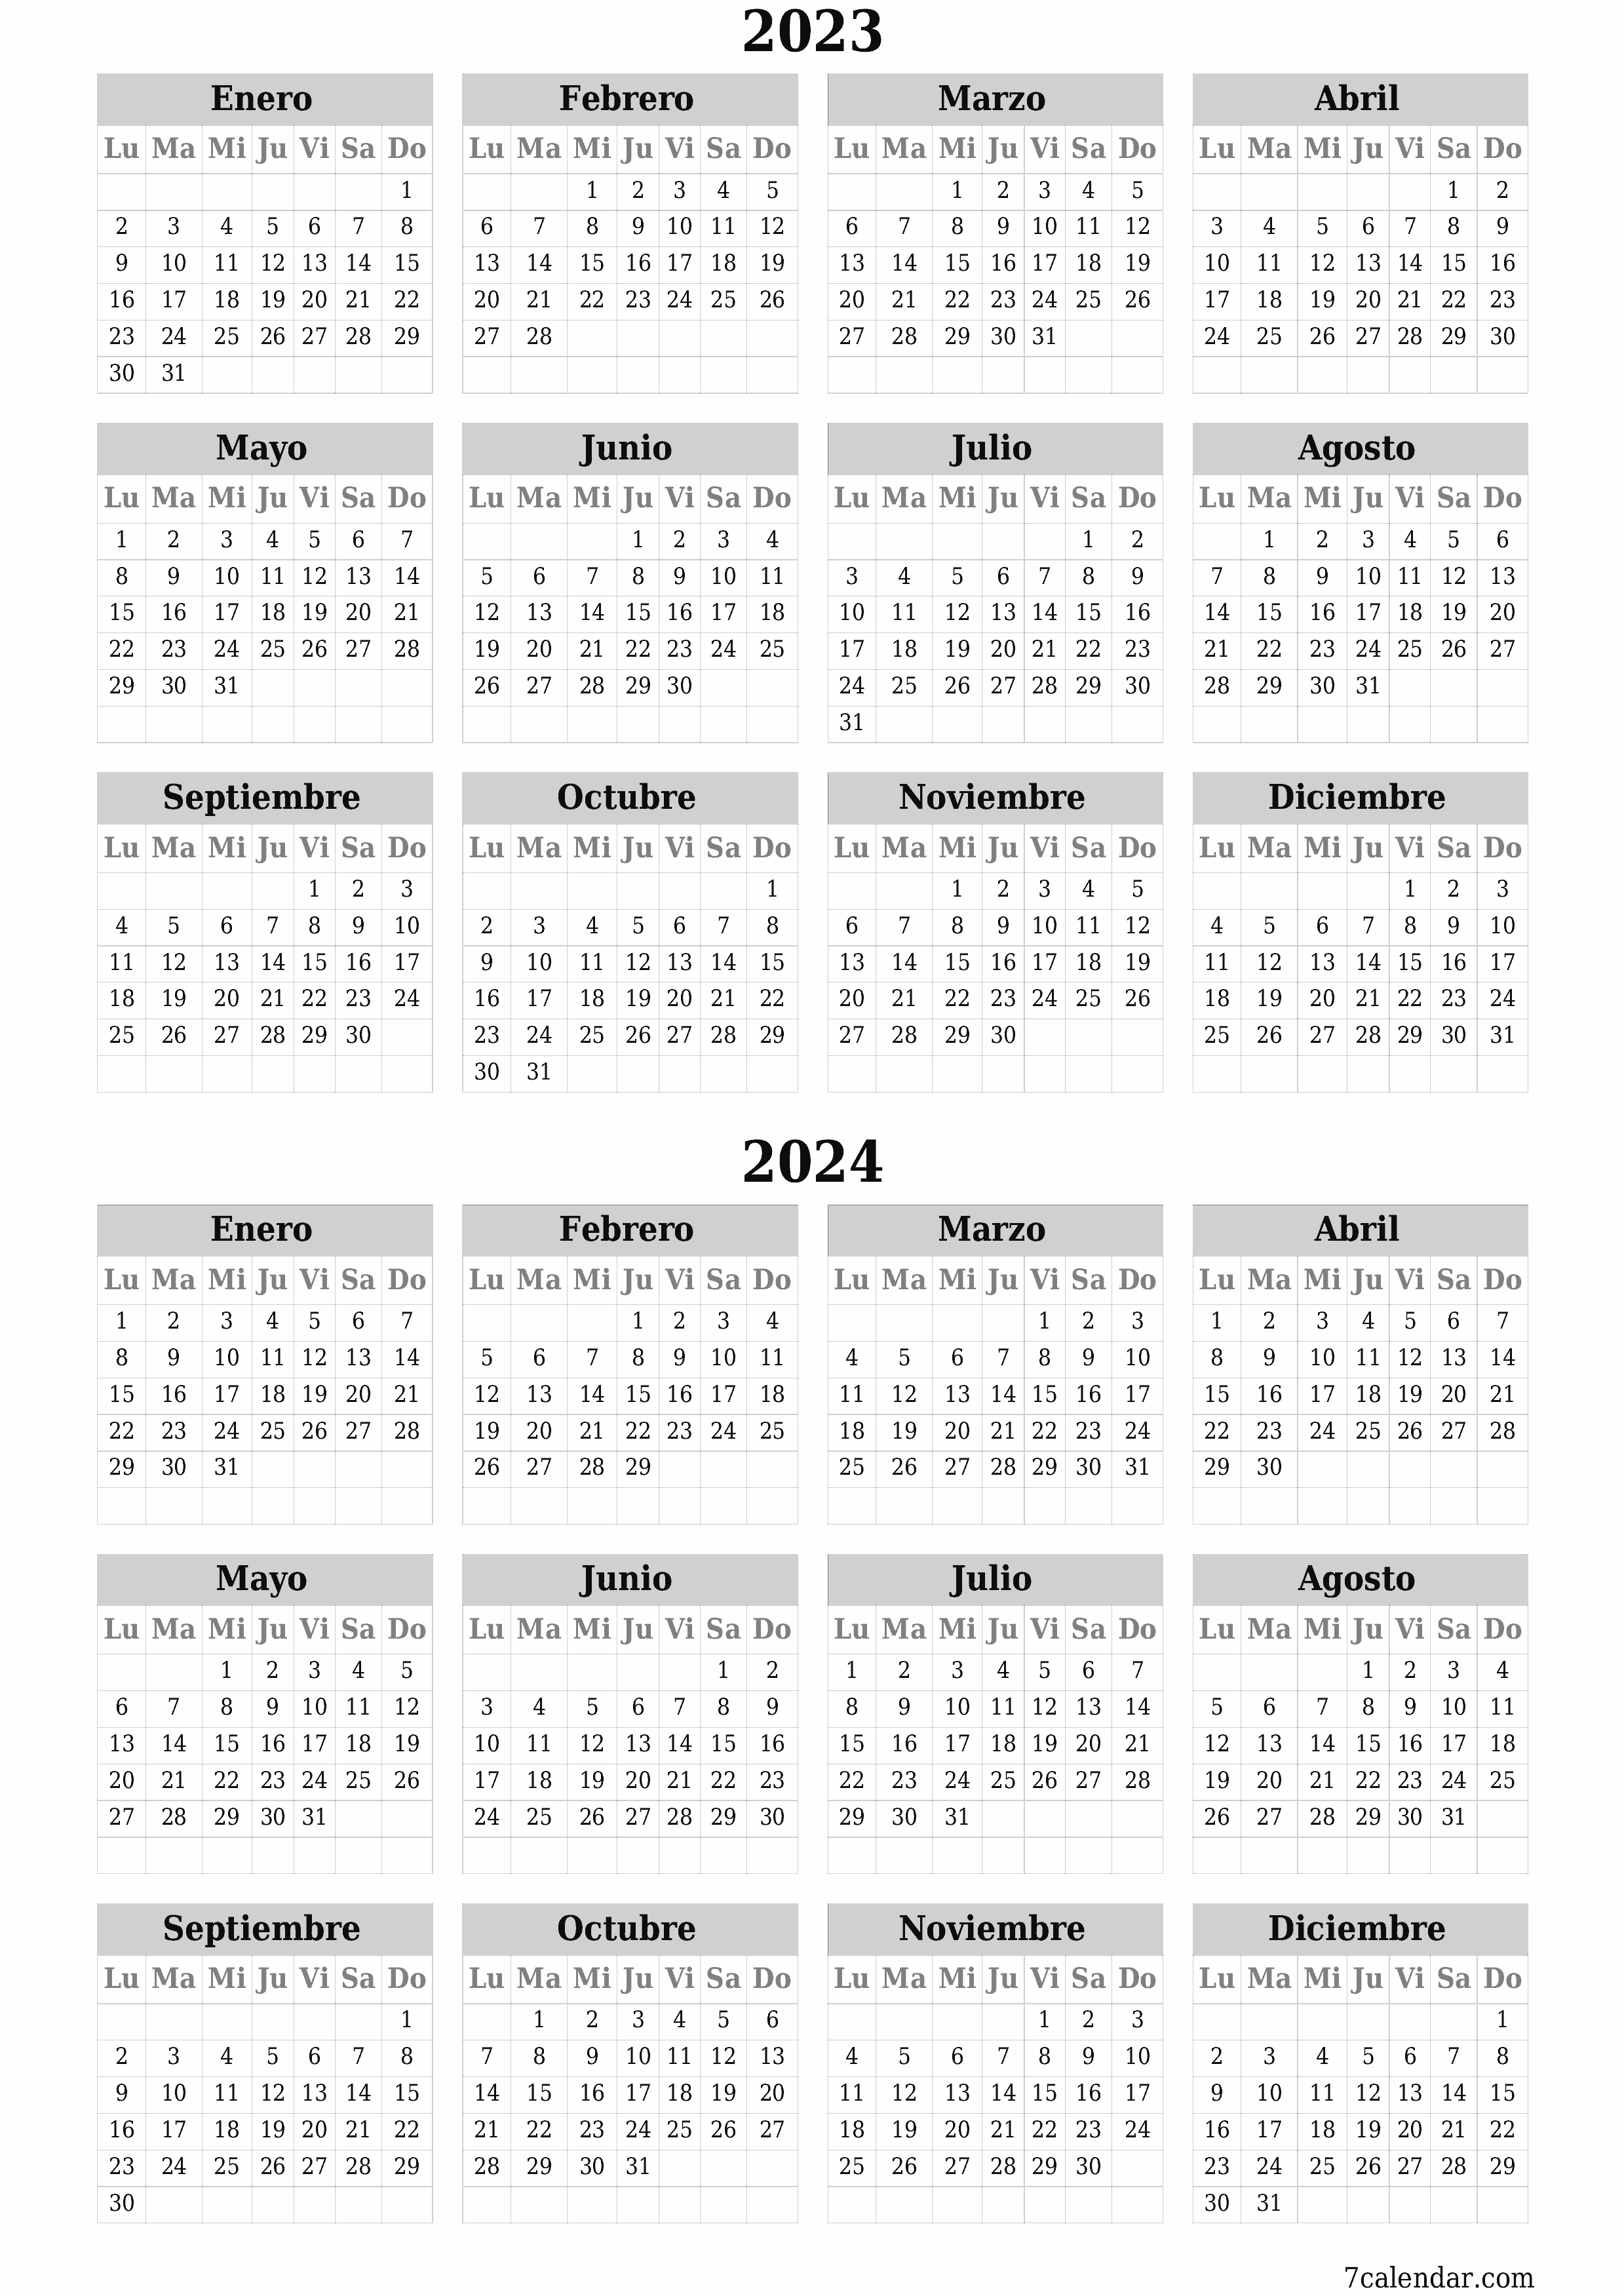  imprimible de pared plantilla de gratisvertical Anual calendario Septiembre (Sep) 2023